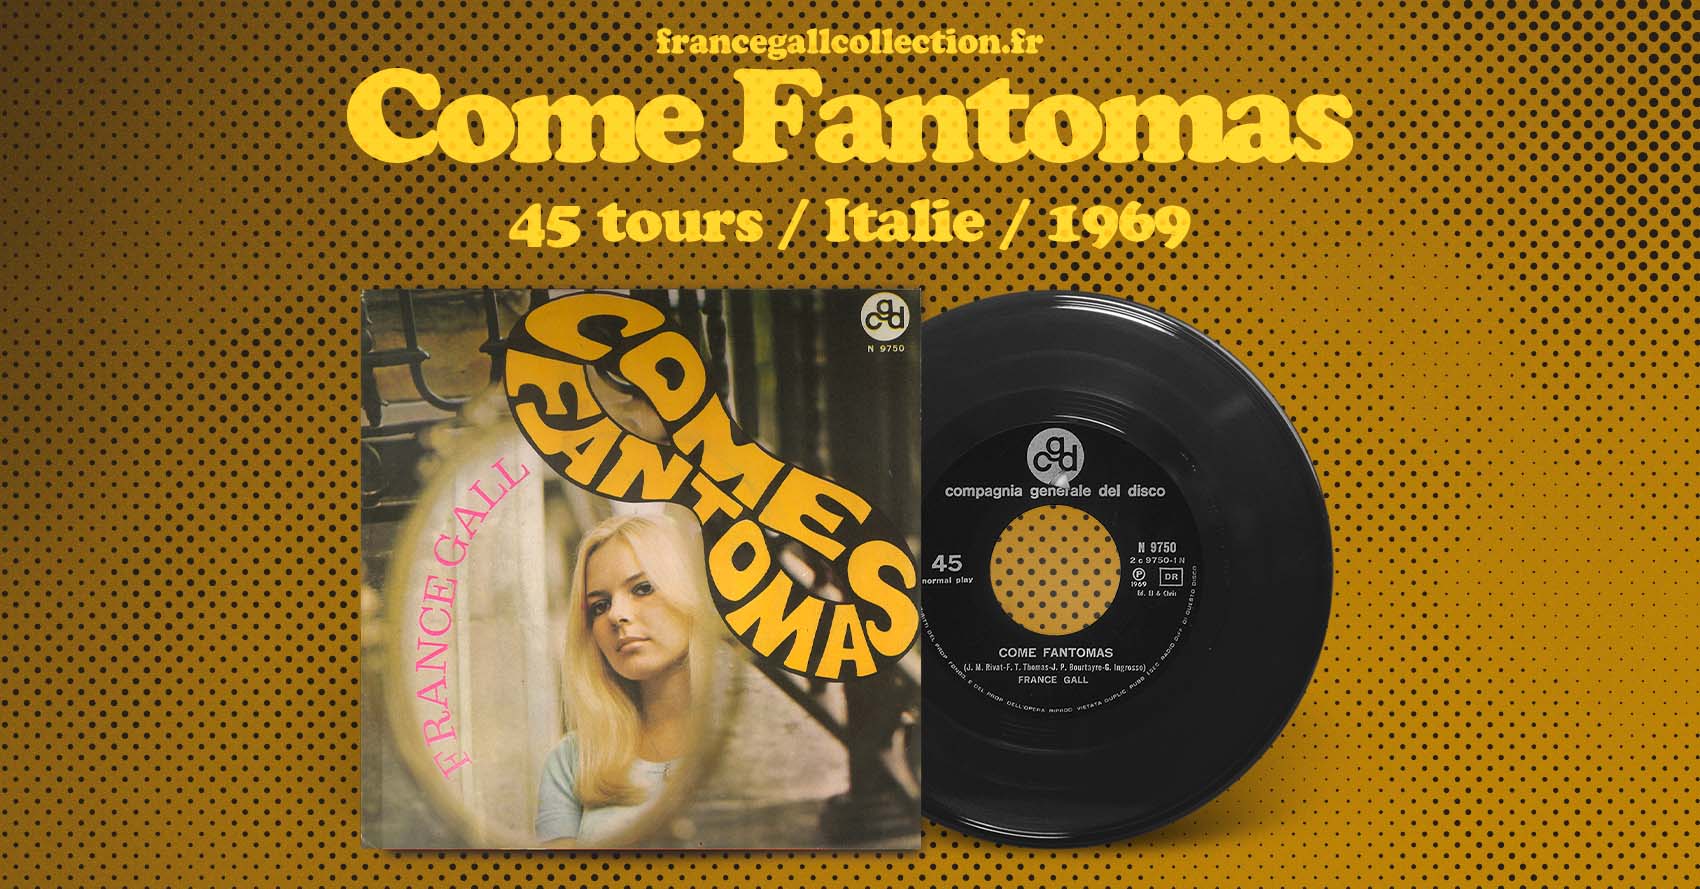 Ce 45 tours édité en Italie en mars 1969 contient deux adaptations en italien des chansons Homme tout petit, avec Come fantomas et Les gens bien élevés avec Chi ride di più.